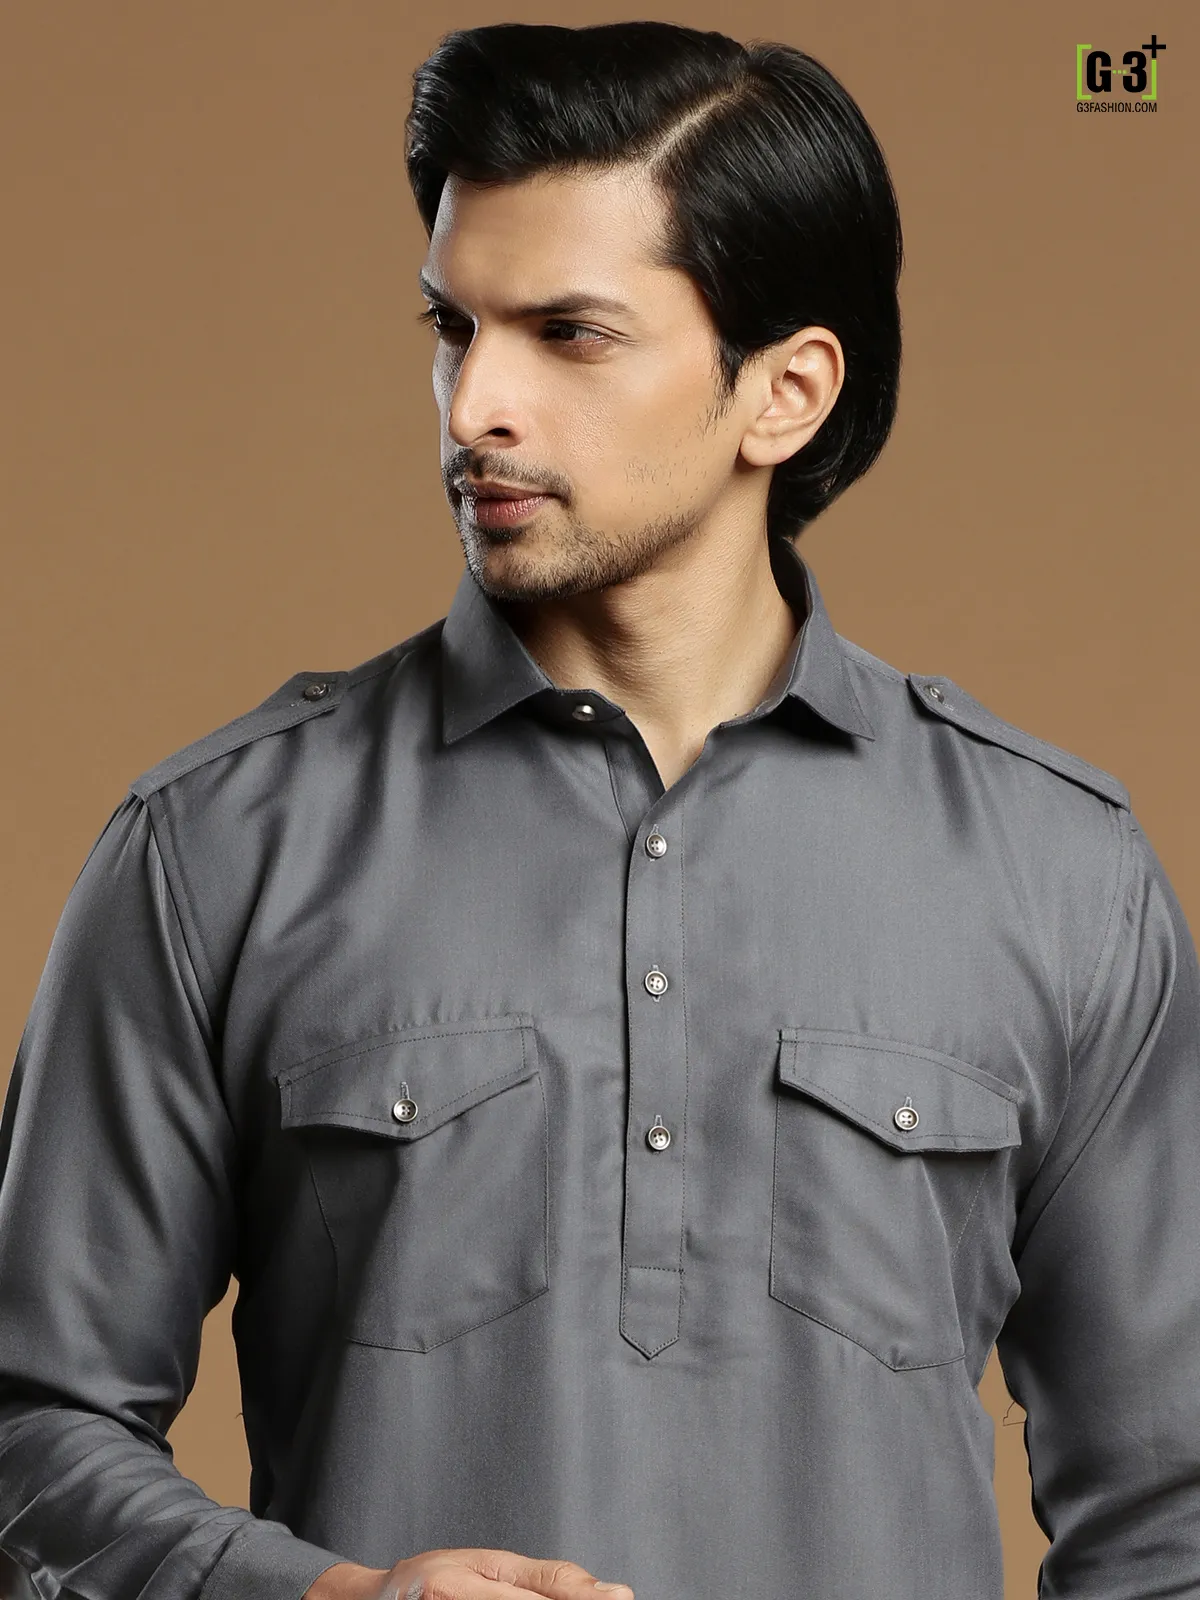 Cotton silk plain grey festive pathani suit for men